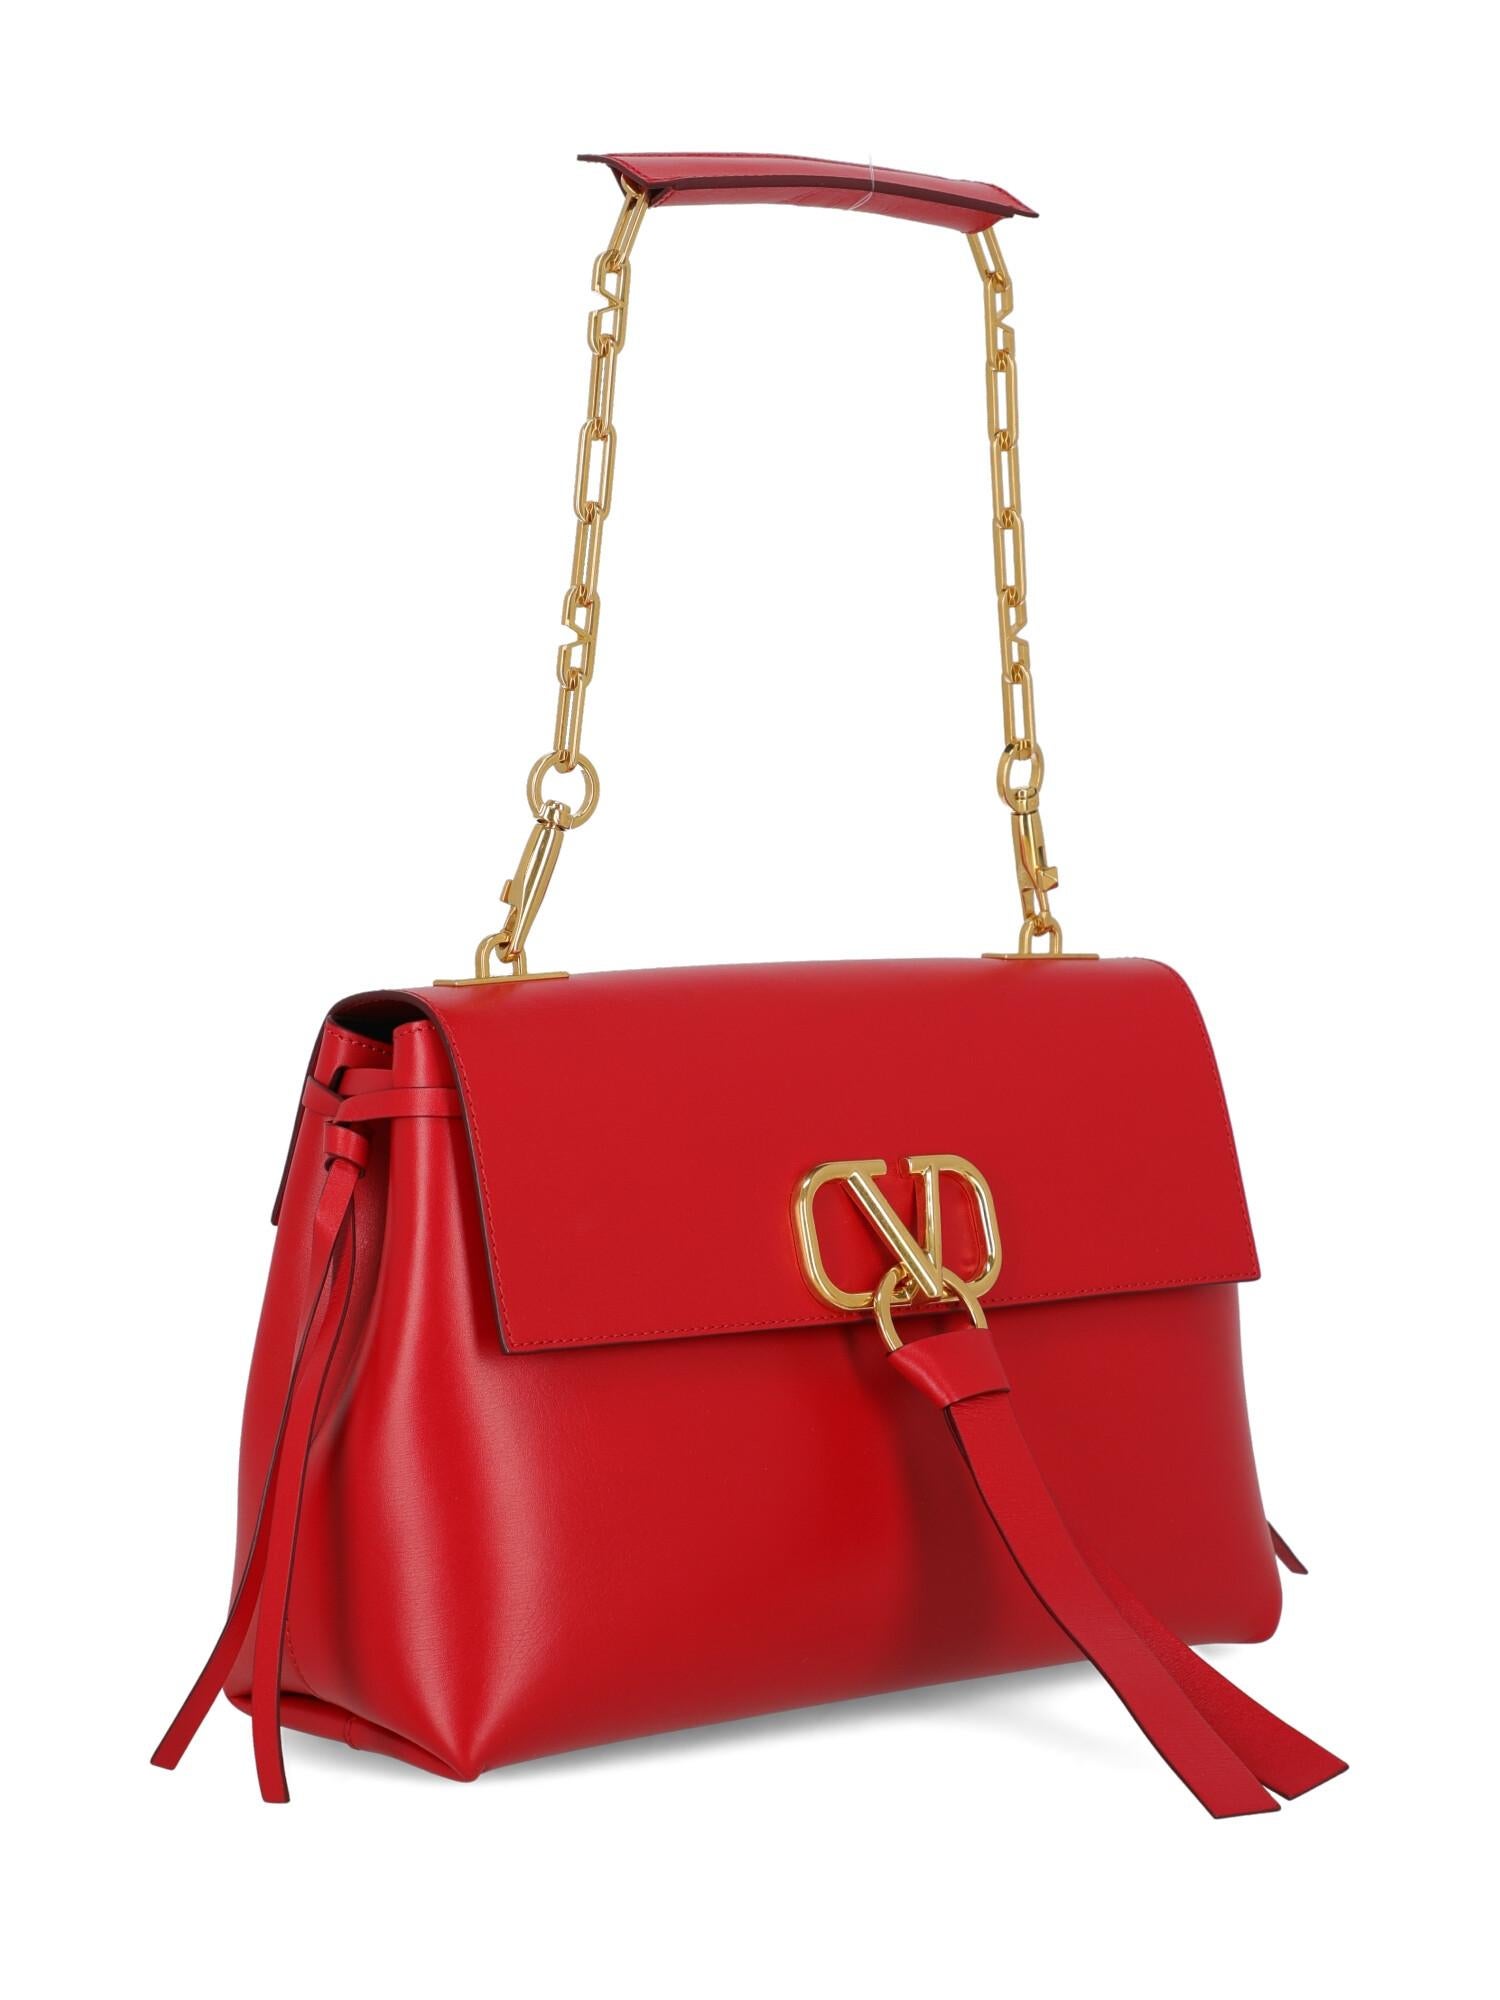 valentino red handbag